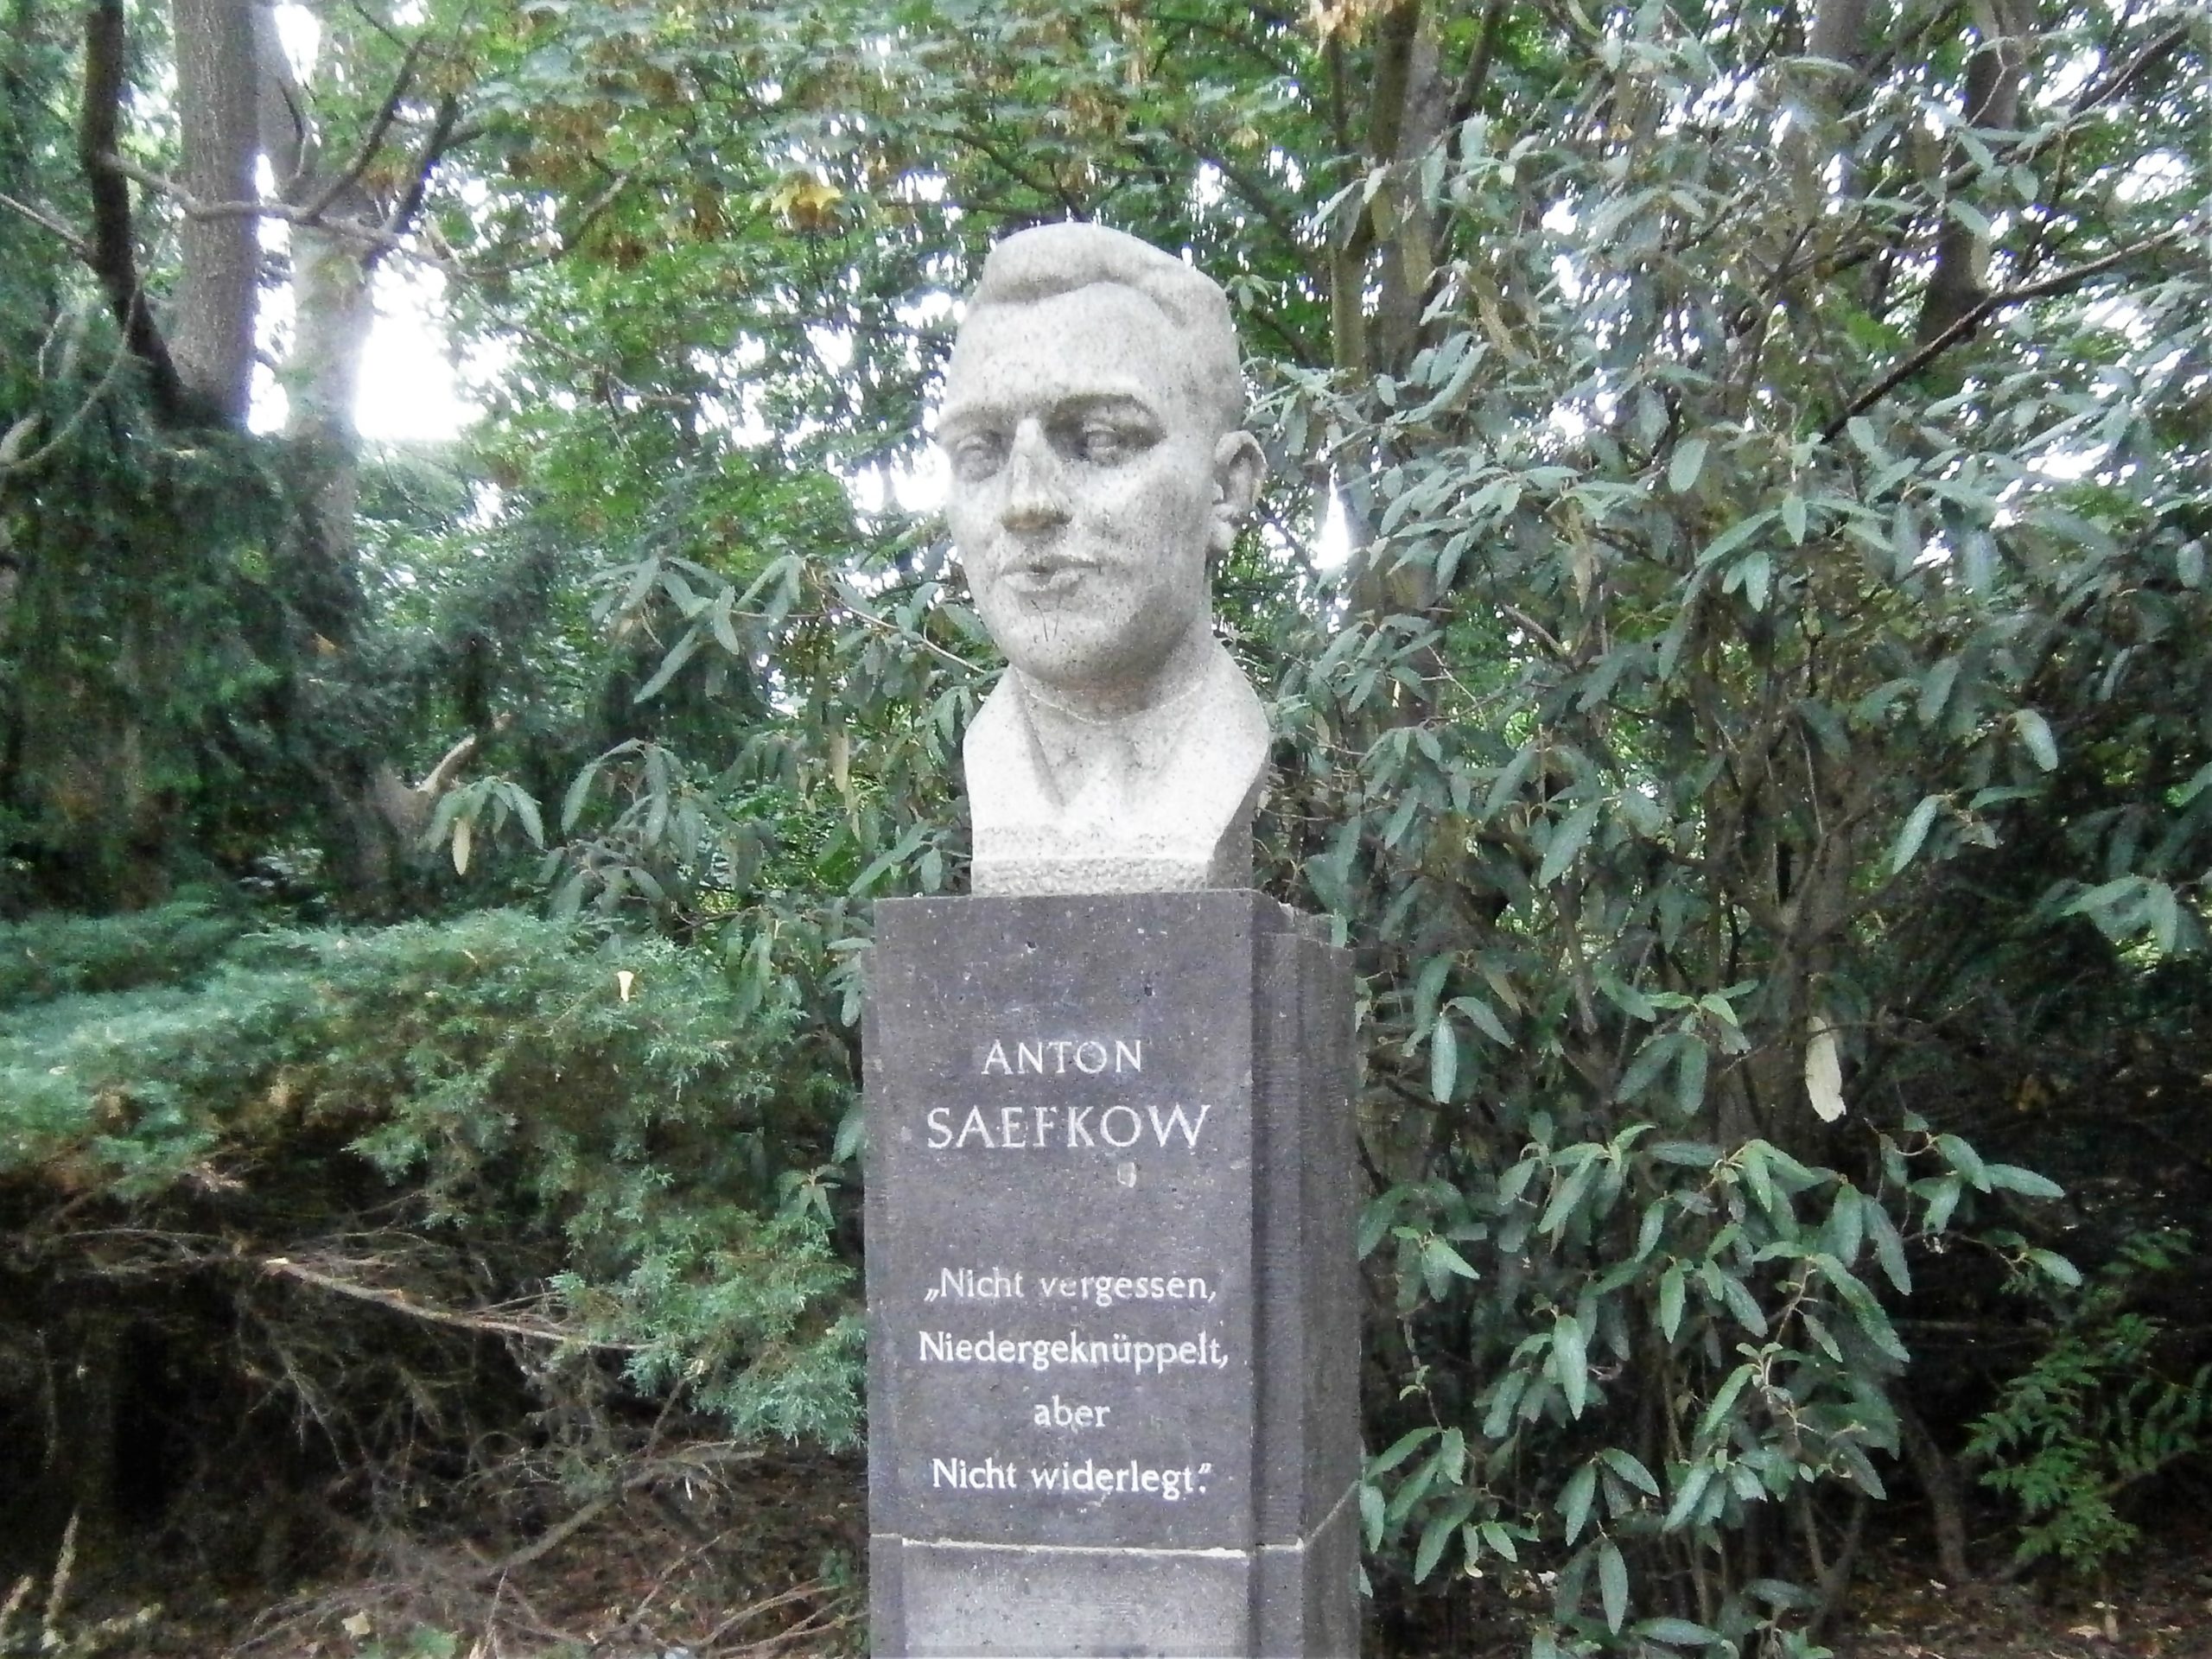 Der Volkspark Anton Saefkow ist benannt nach einem Widerstandskämpfer. Eine Büste erinnert an ihn. Foto: Von Boonekamp/Wikimedia Commons/CC BY-SA 4.0